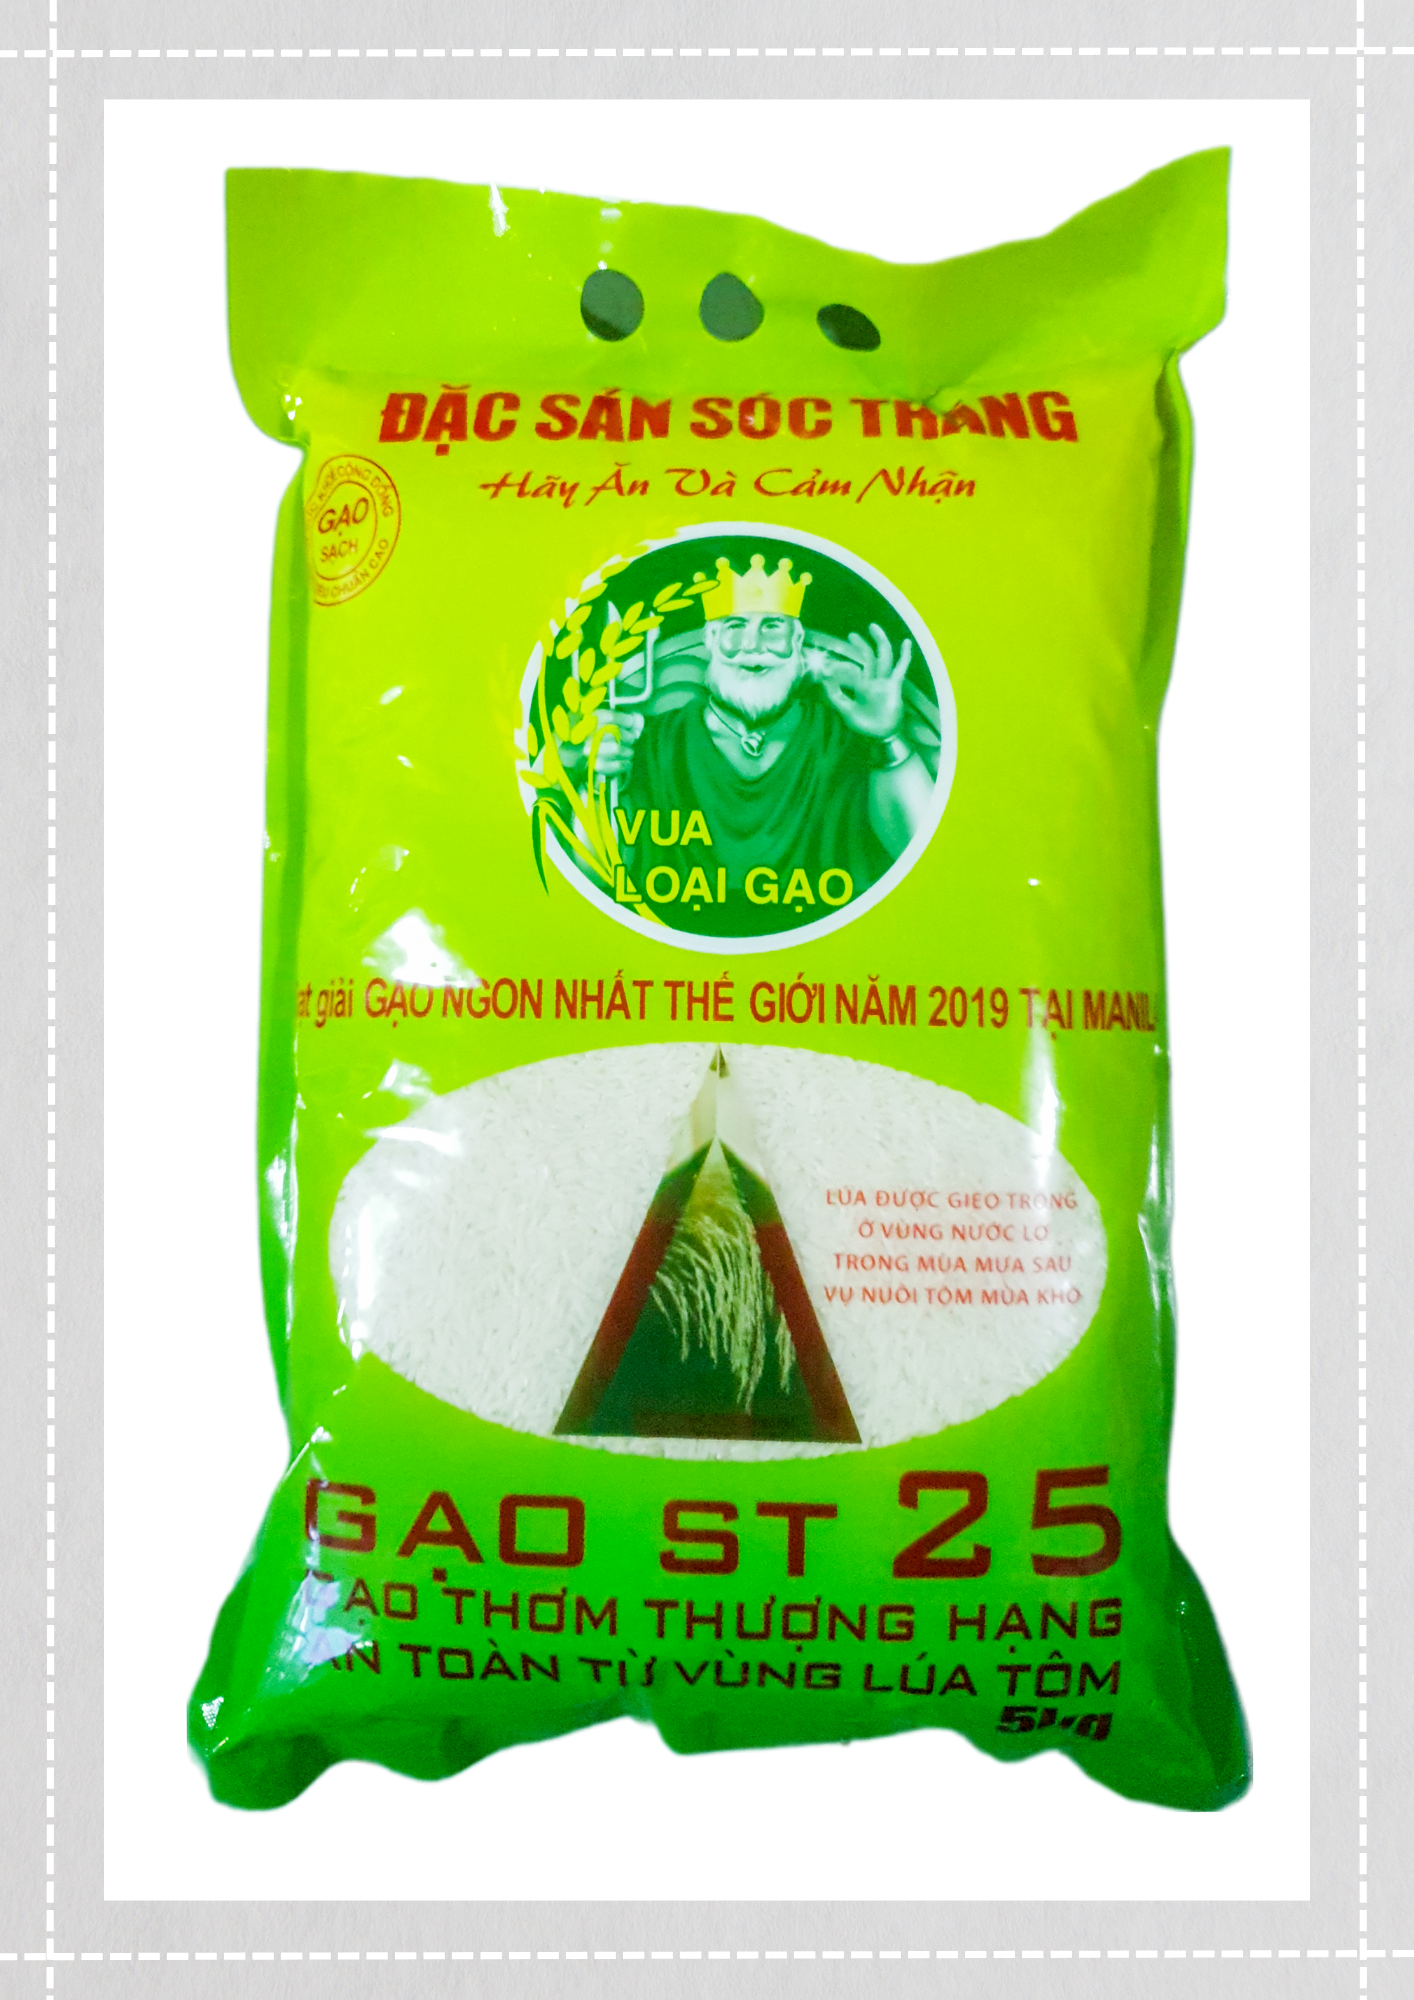 Gạo ST25 - Gạo thơm thượng hạng, an toàn từ vùng Lúa tôm - 5 kg